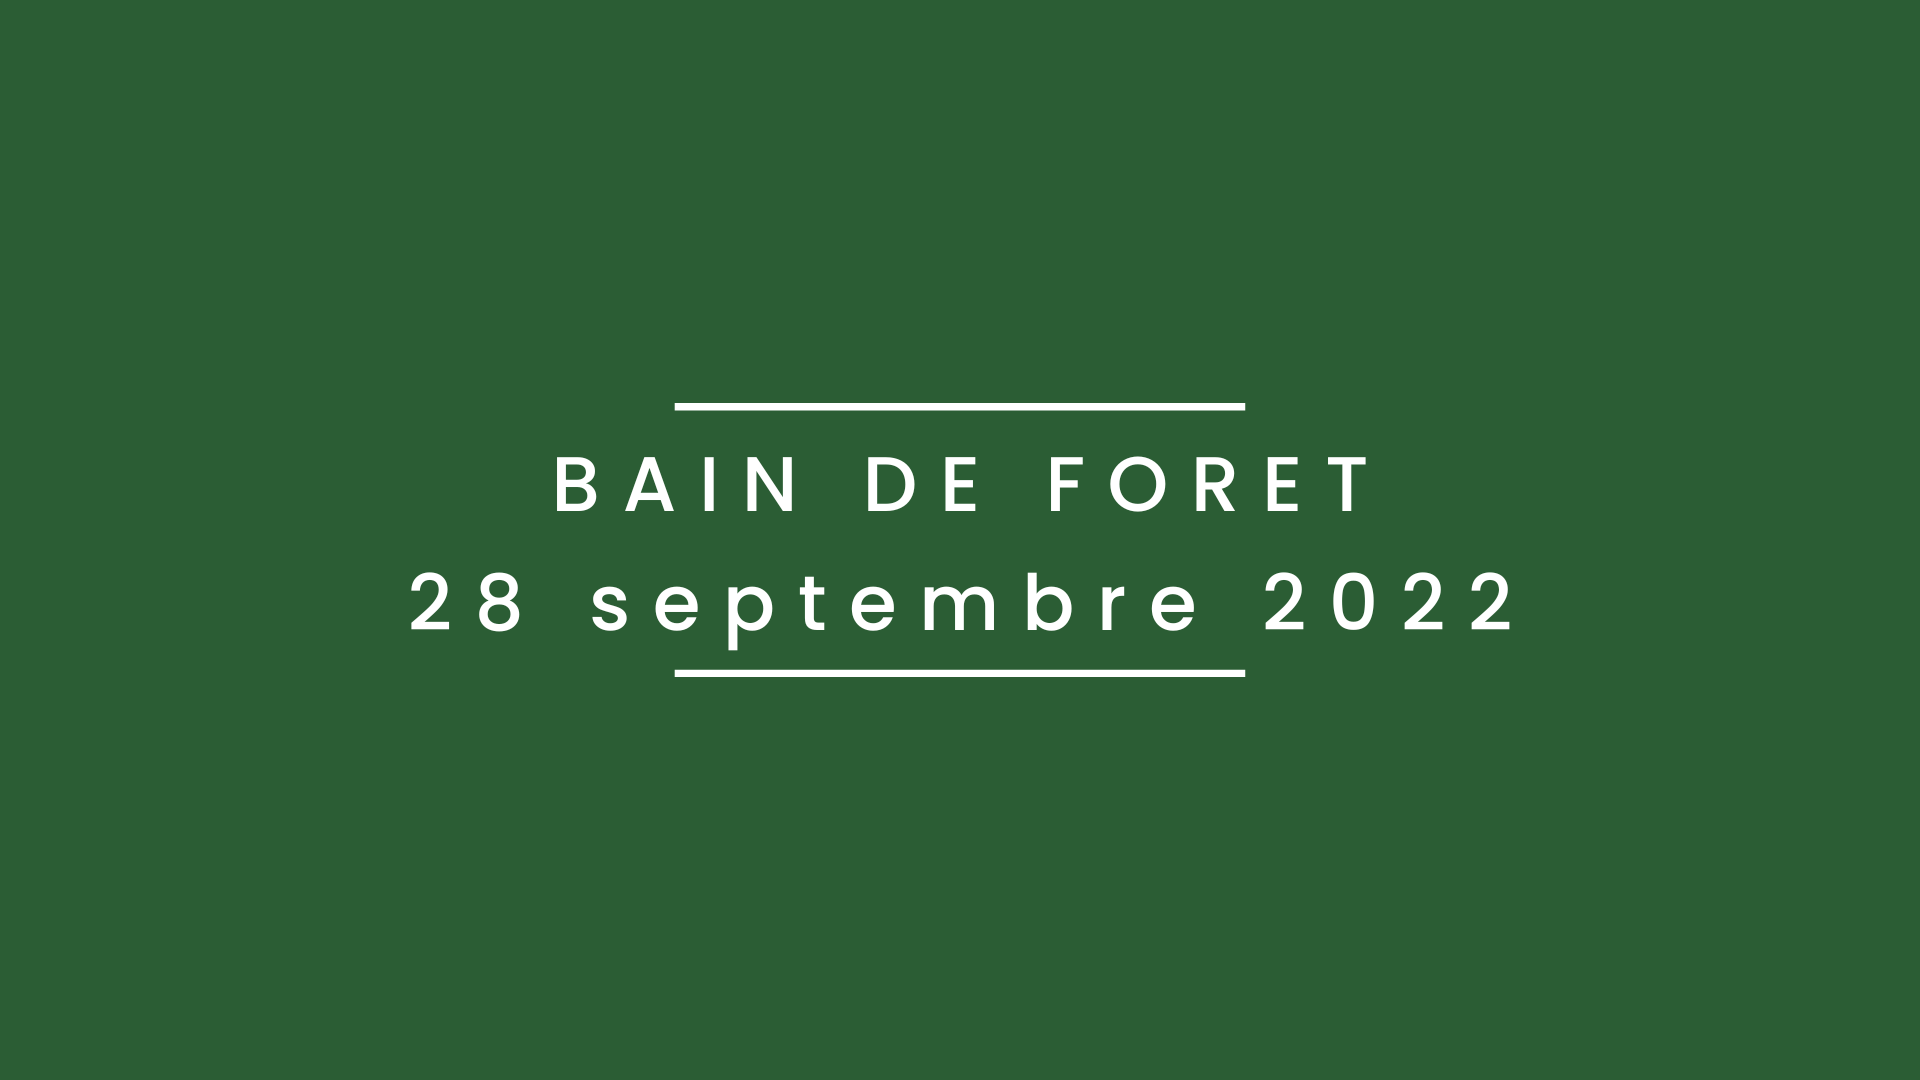 Bain de forêt 28 septembre 2022